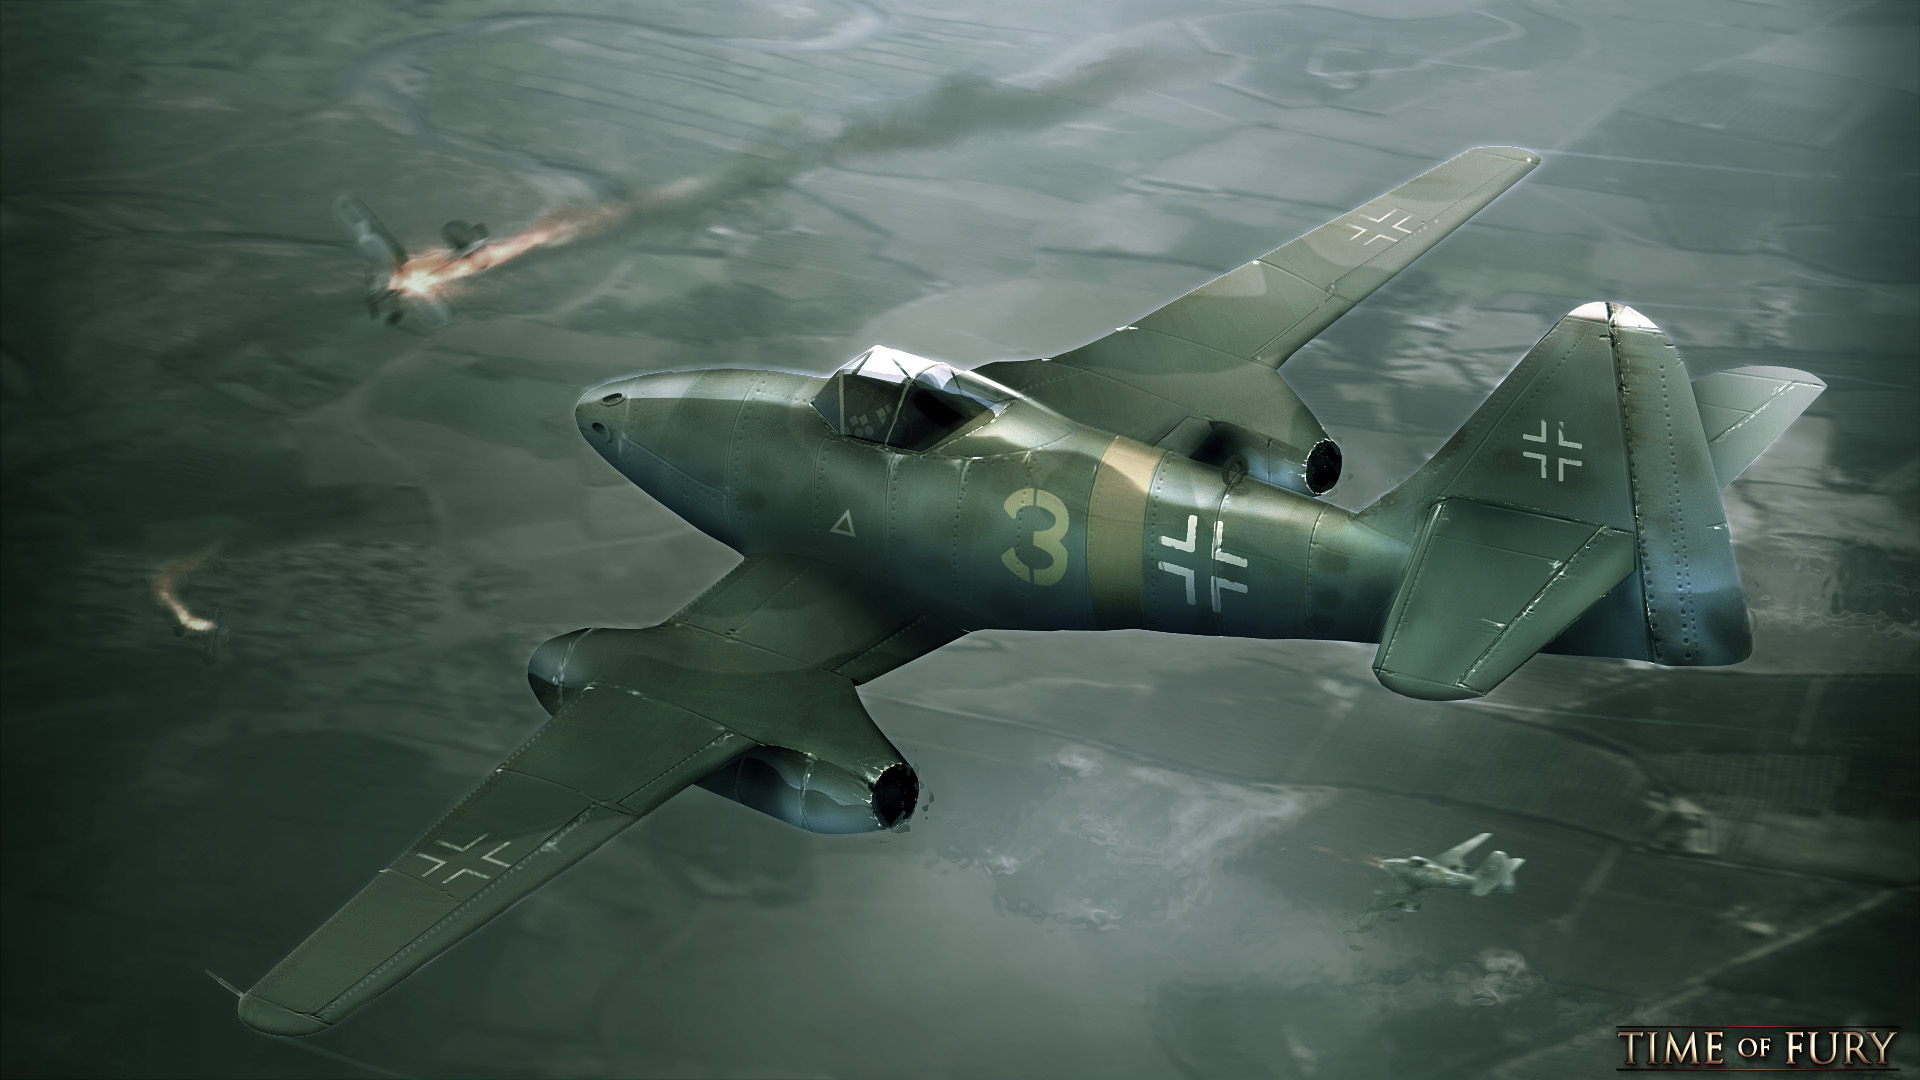 General 1920x1080 Luftwaffe war World War II aircraft military vehicle dogfight smoke flying Messerschmitt Me 262 Messerschmitt German aircraft